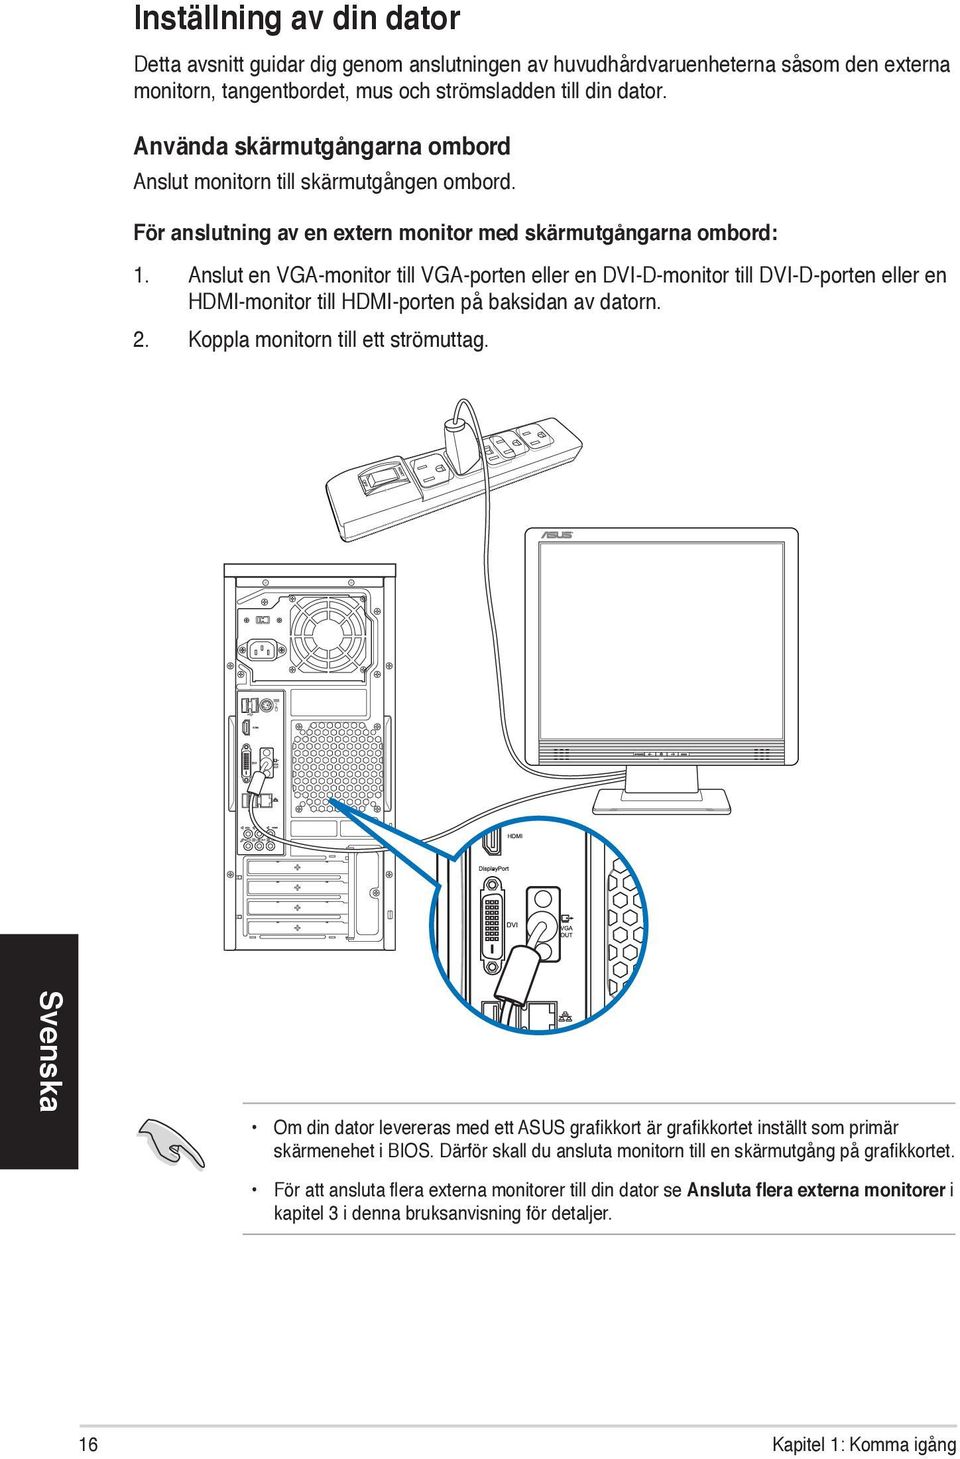 Anslut en VGA-monitor till VGA-porten eller en DVI-D-monitor till DVI-D-porten eller en HDMI-monitor till HDMI-porten på baksidan av datorn. 2. Koppla monitorn till ett strömuttag.